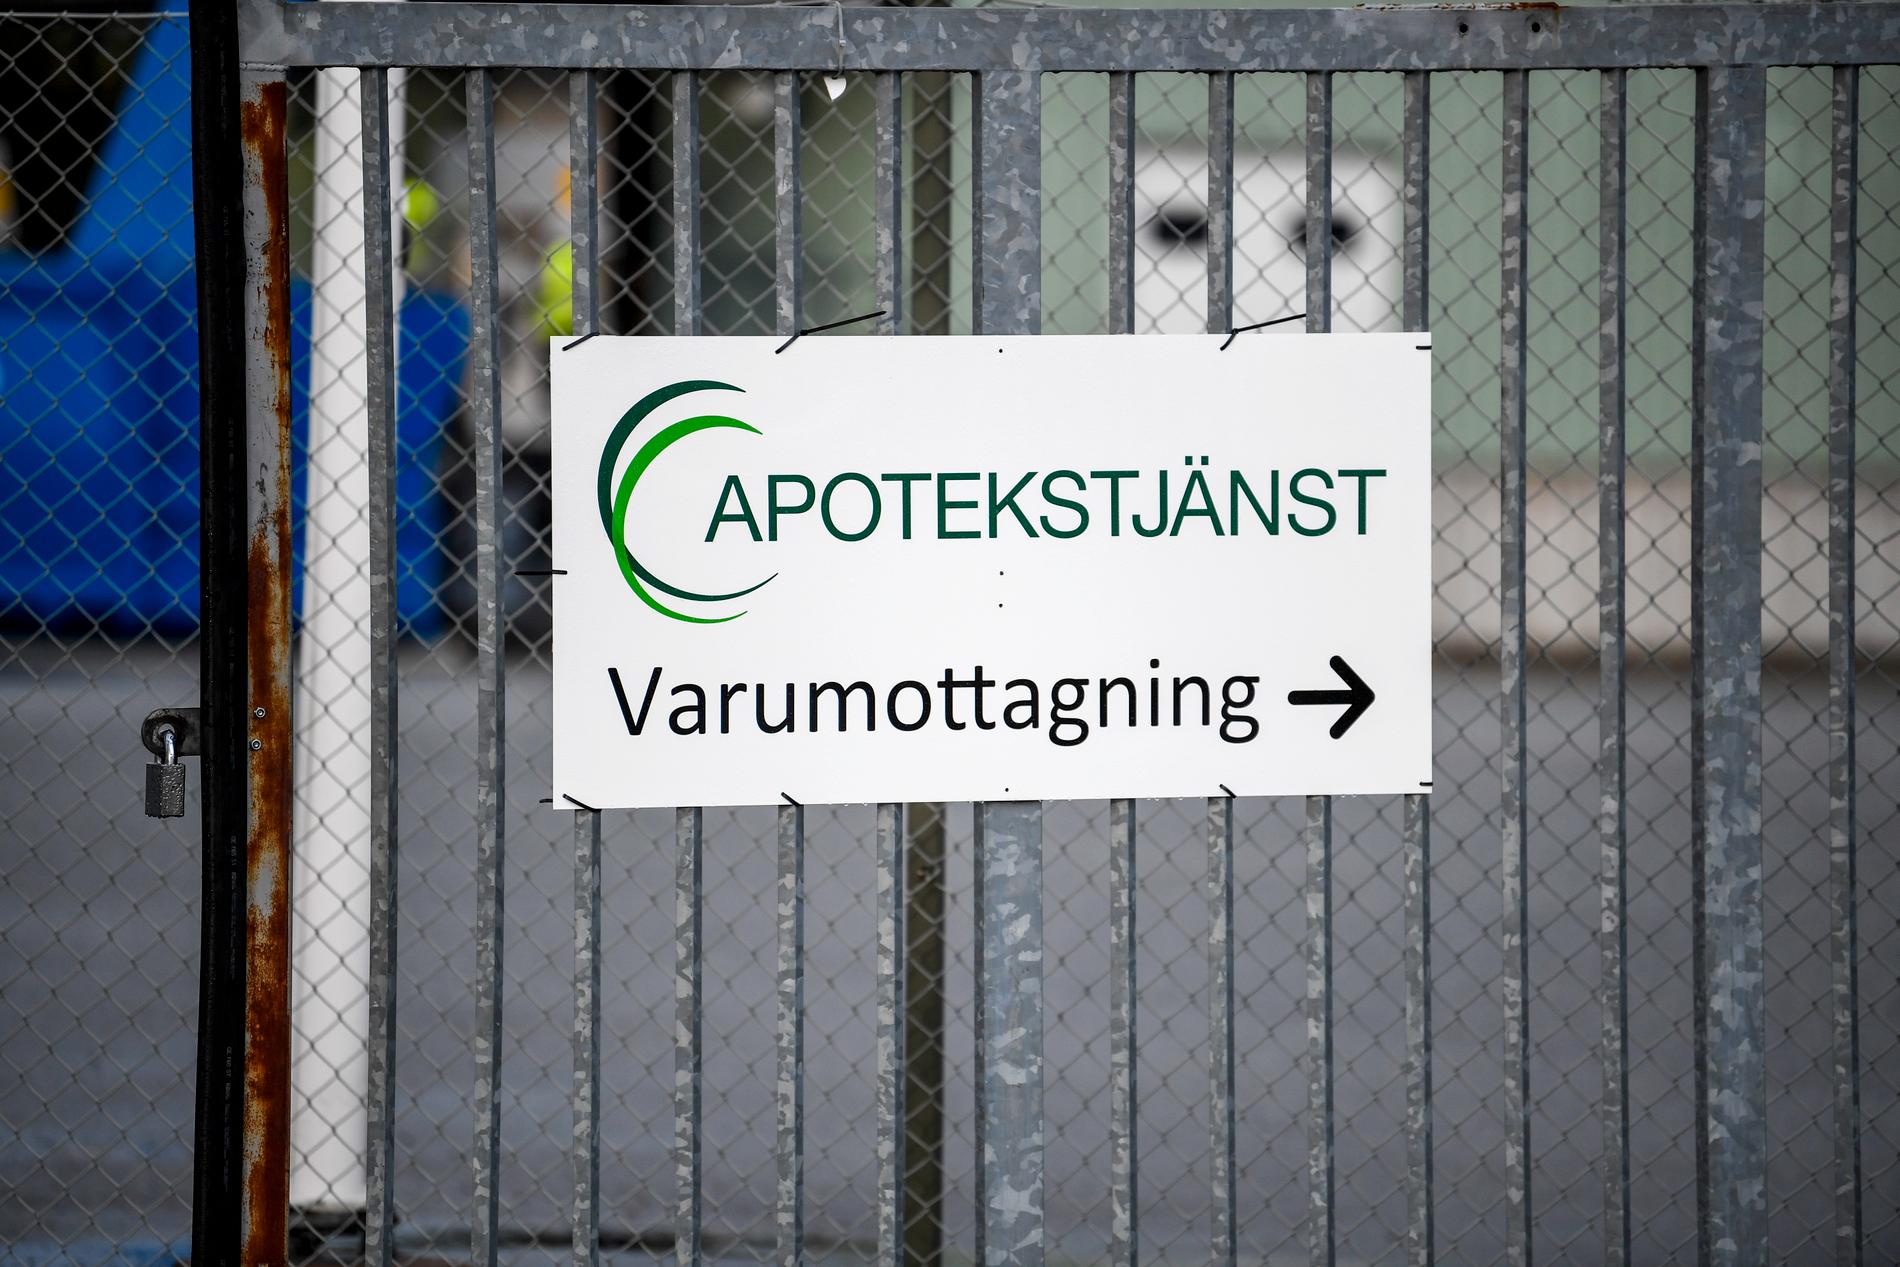 Apotekstjänst lager i Uppsala, där vd:n befann sig men inte ville svara på TT:s frågor.